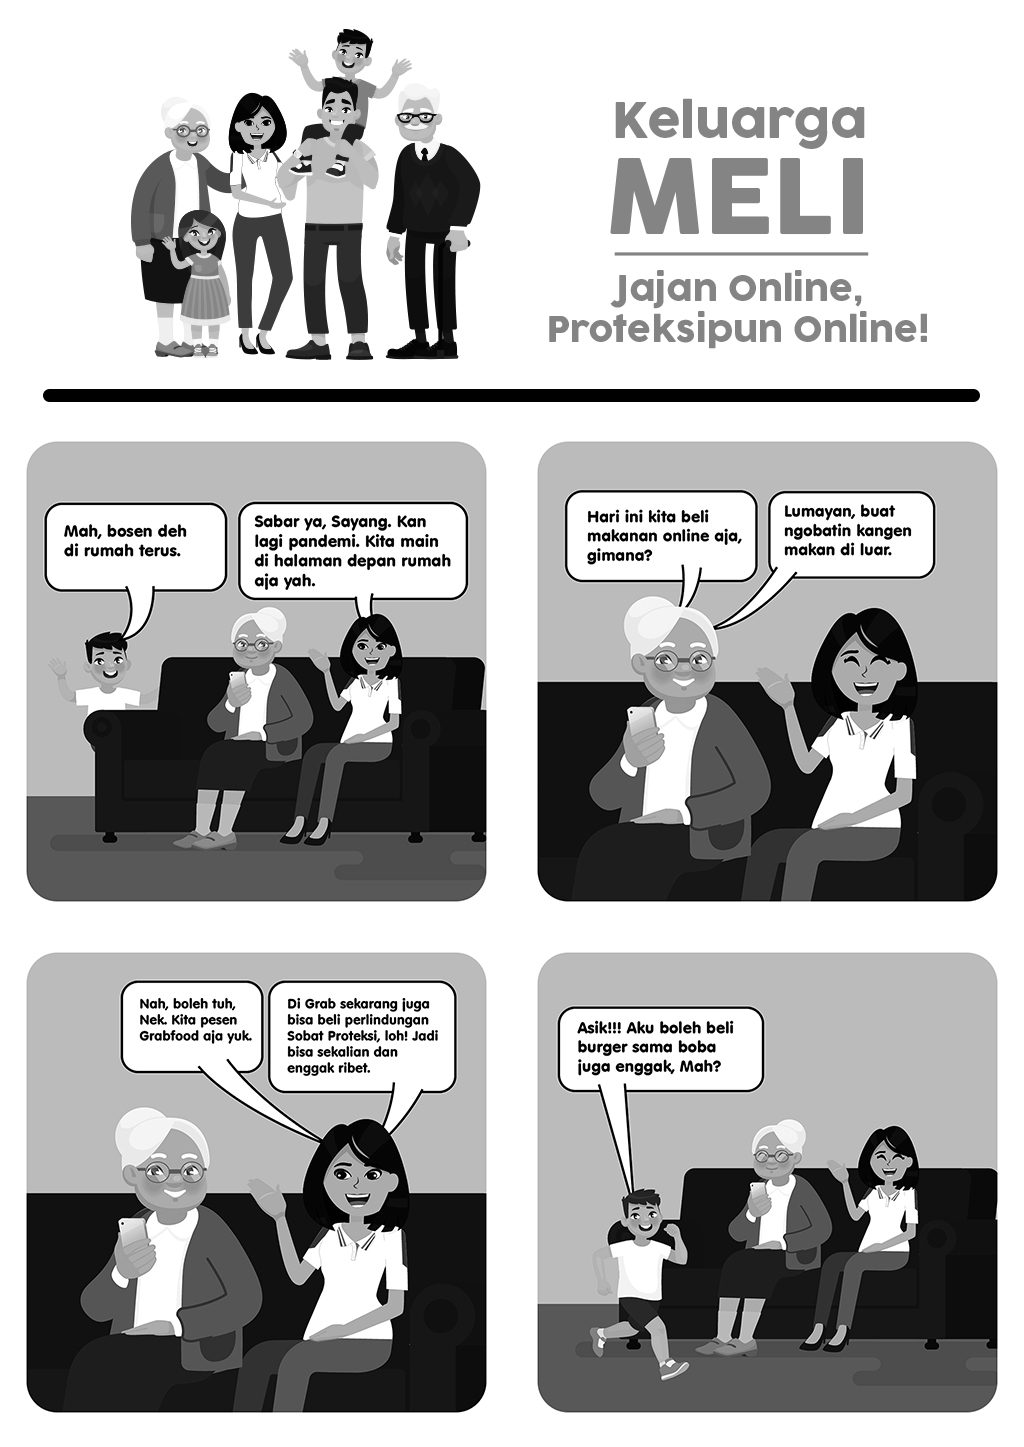 Komik Strip: Keluarga Meli - Jajan Online, Proteksipun Online!